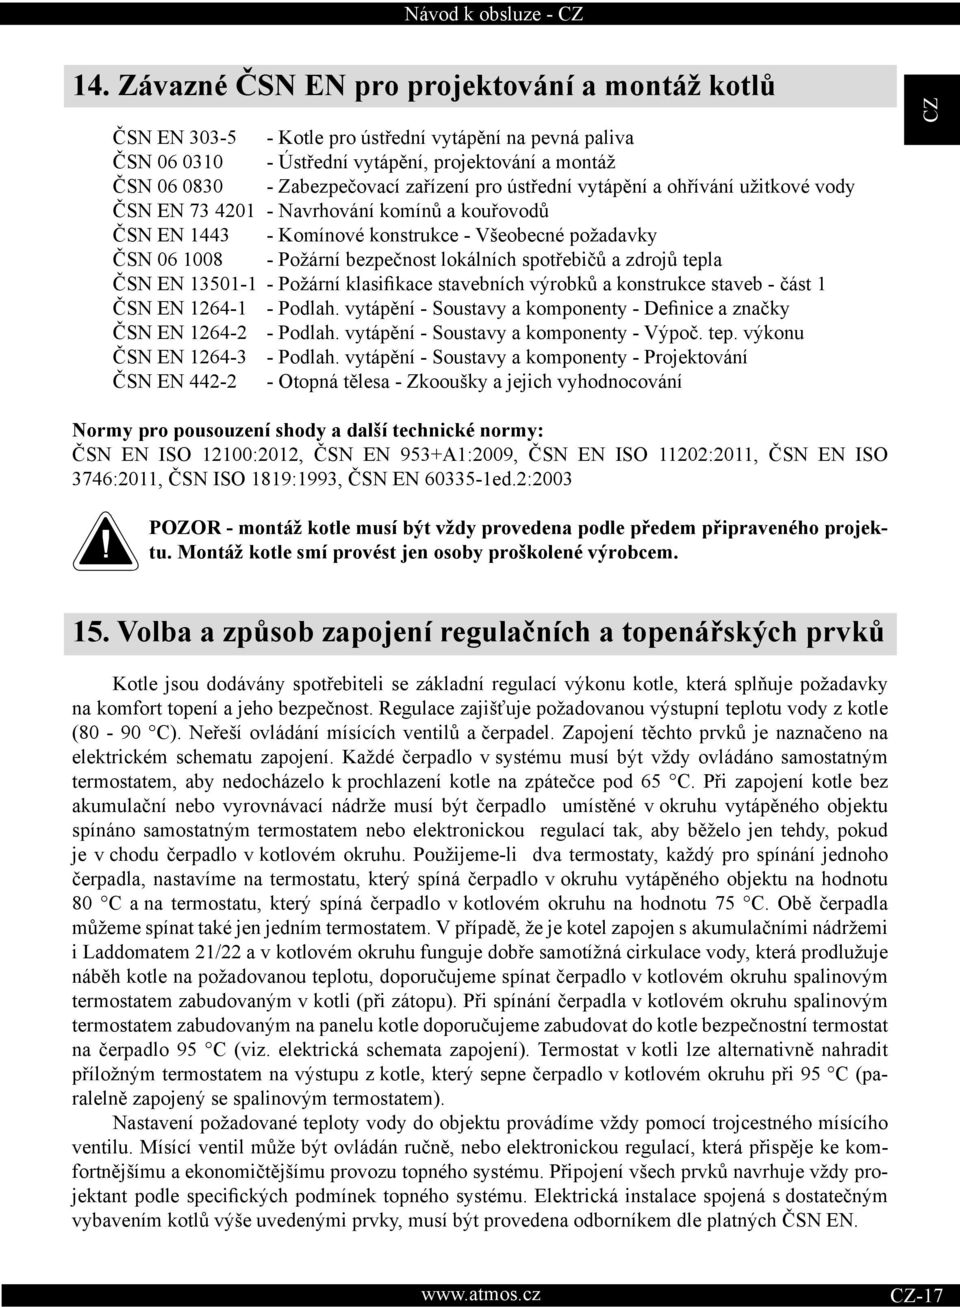 lokálních spotřebičů a zdrojů tepla ČSN EN 13501-1 - Požární klasifikace stavebních výrobků a konstrukce staveb - část 1 ČSN EN 1264-1 - Podlah.